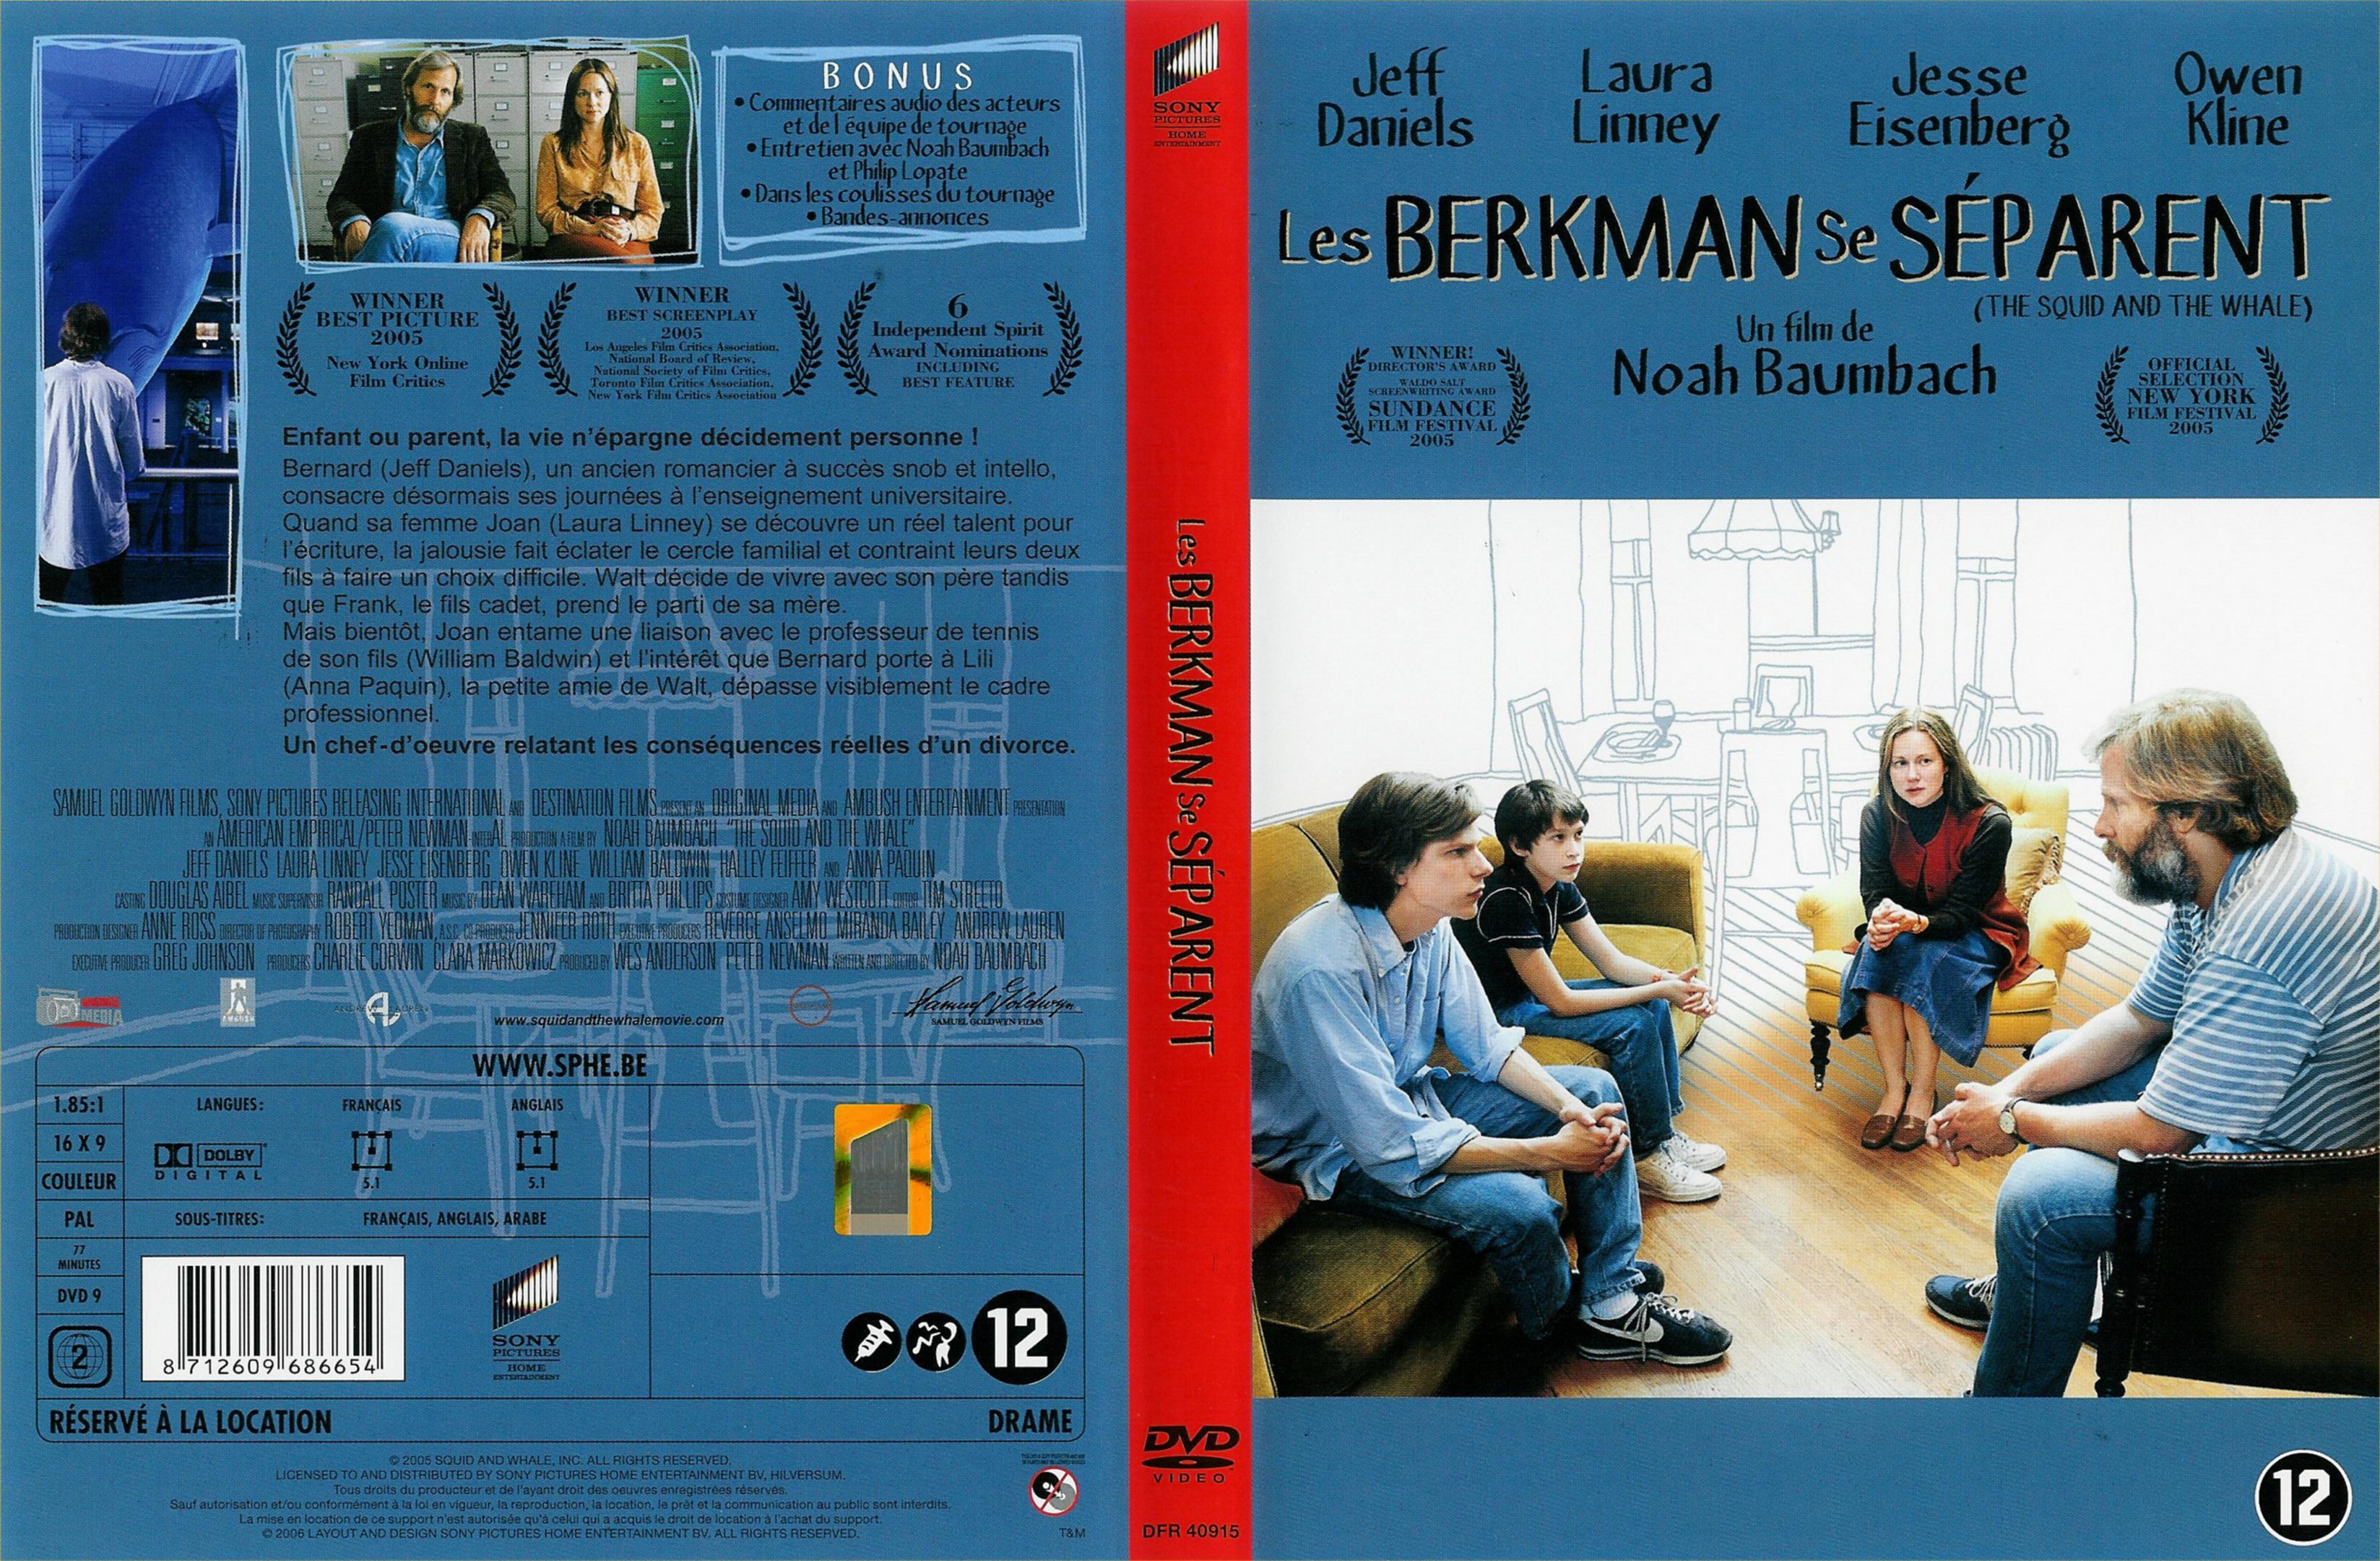 Jaquette DVD Les Berkman se sparent v3